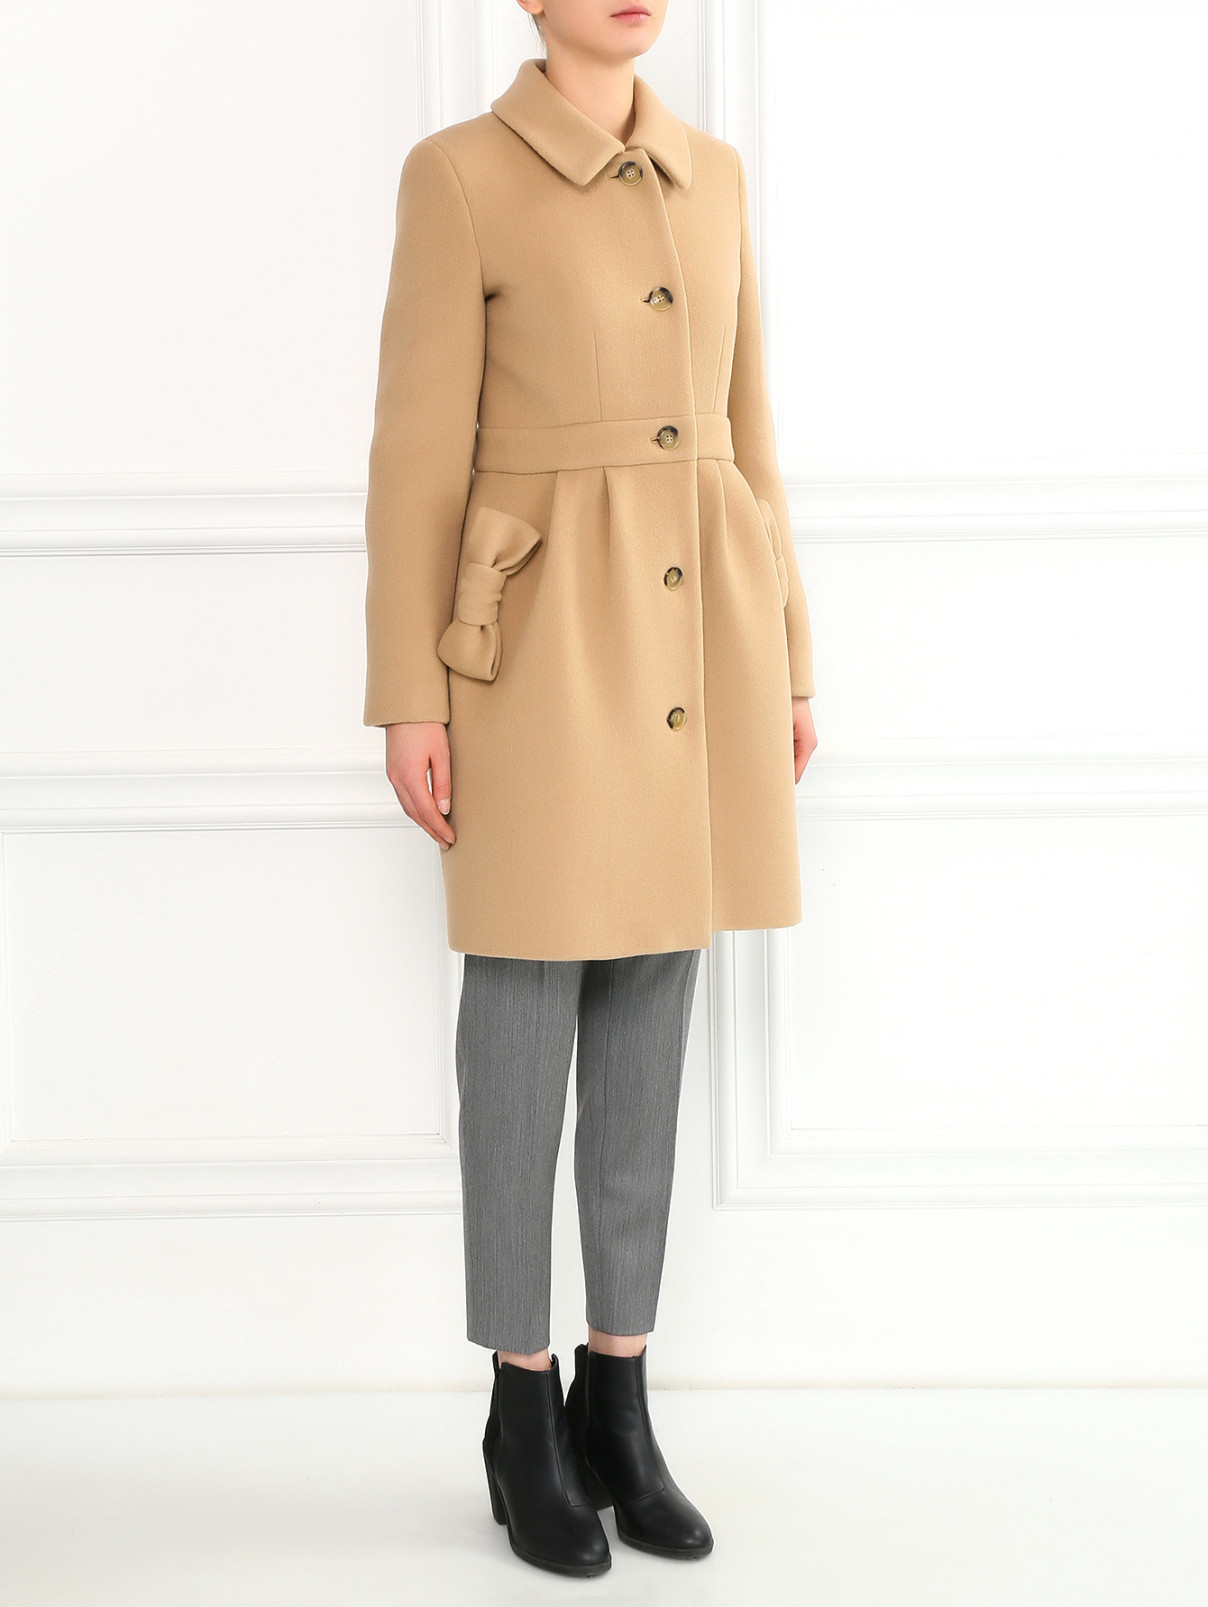 Пальто из шерсти с декоративными бантами Moschino Boutique  –  Модель Общий вид  – Цвет:  Бежевый